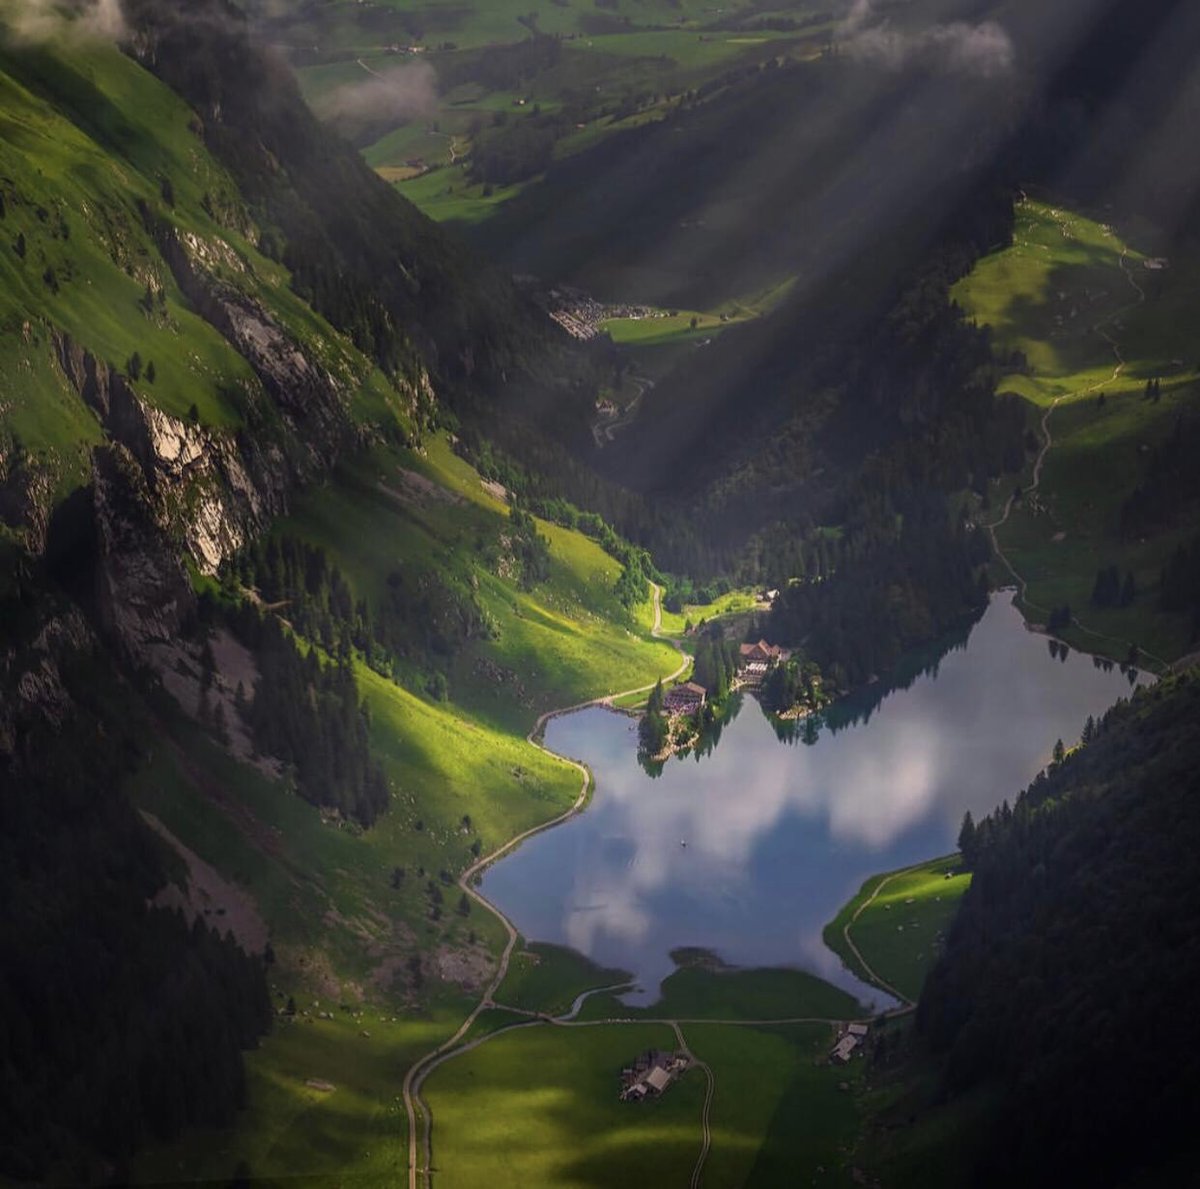 İlk fotoğraf bizim doğal güzelliğimiz, Uzungöl, ikinci fotoğraf İsviçre’nin doğal güzelliği Seealpsee gölü ...